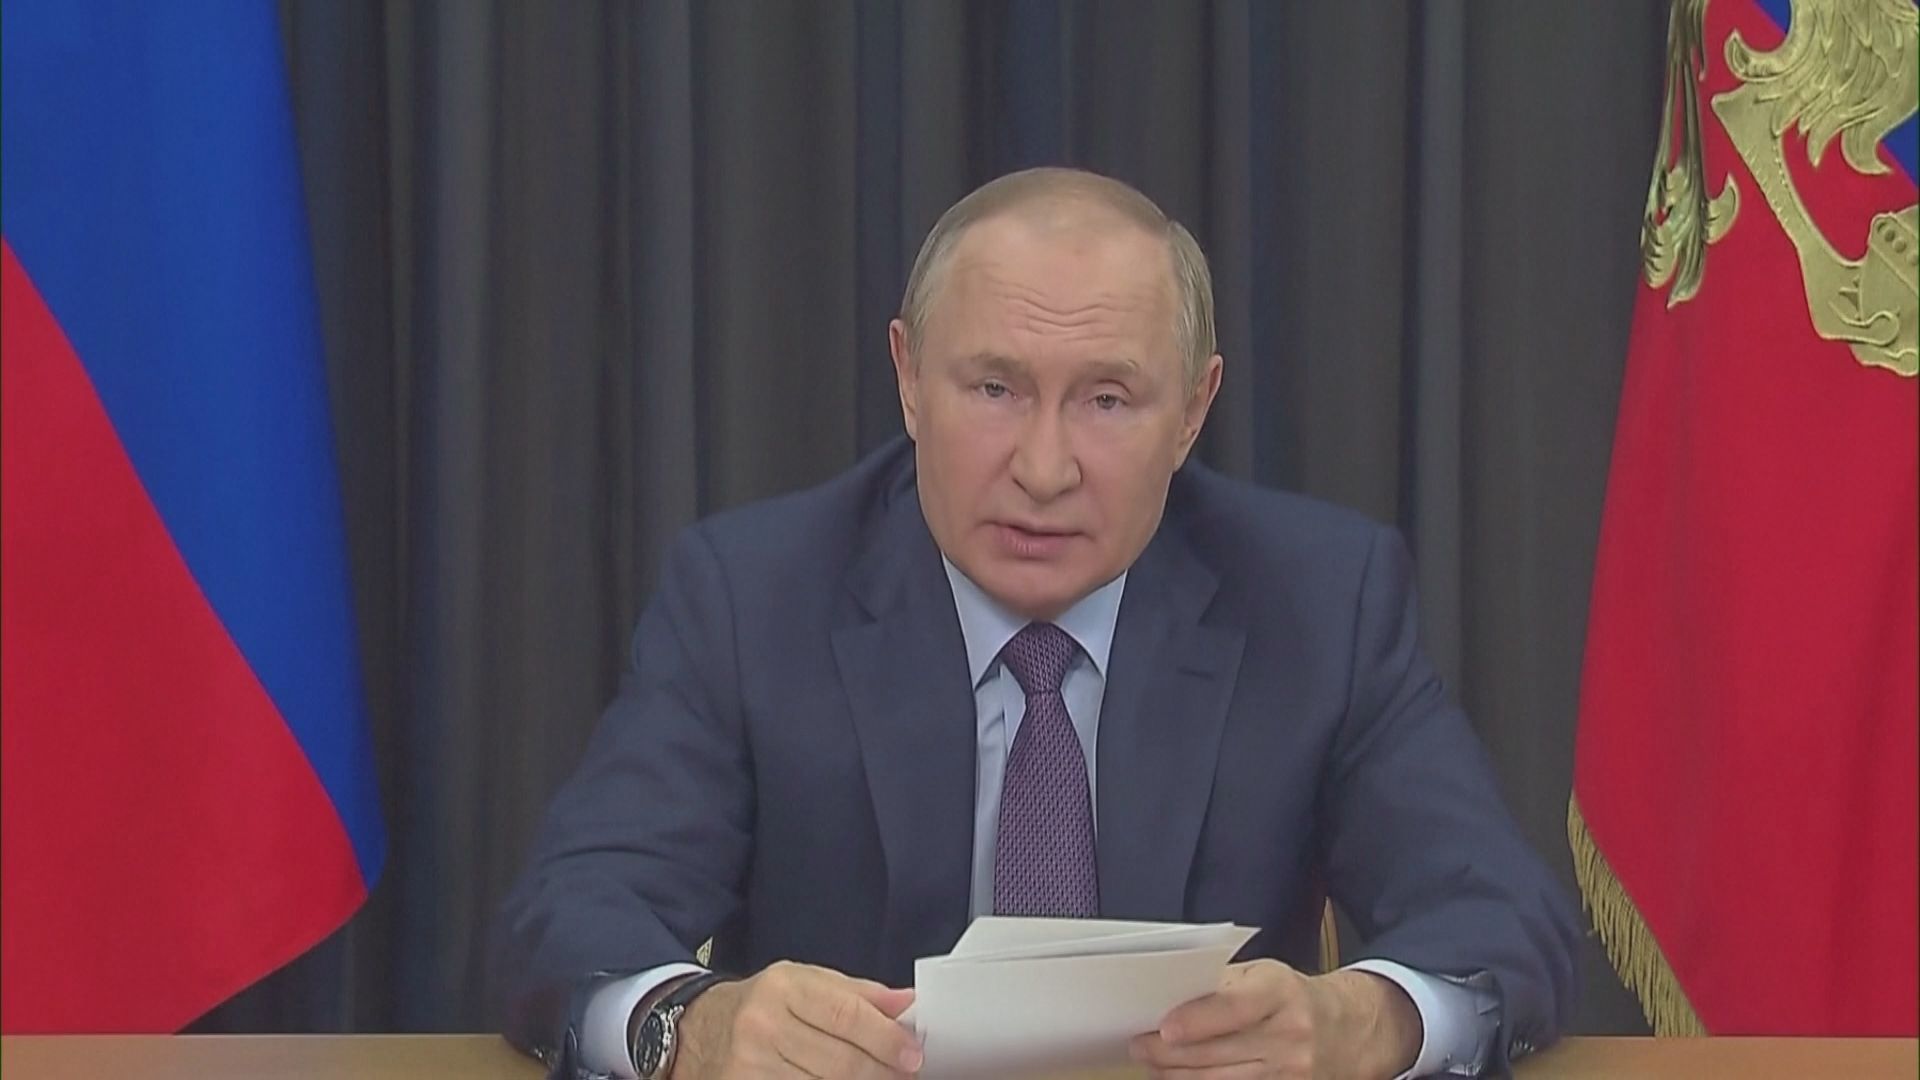 【速報】プーチン大統領 あす30日にウクライナ支配地域併合で演説